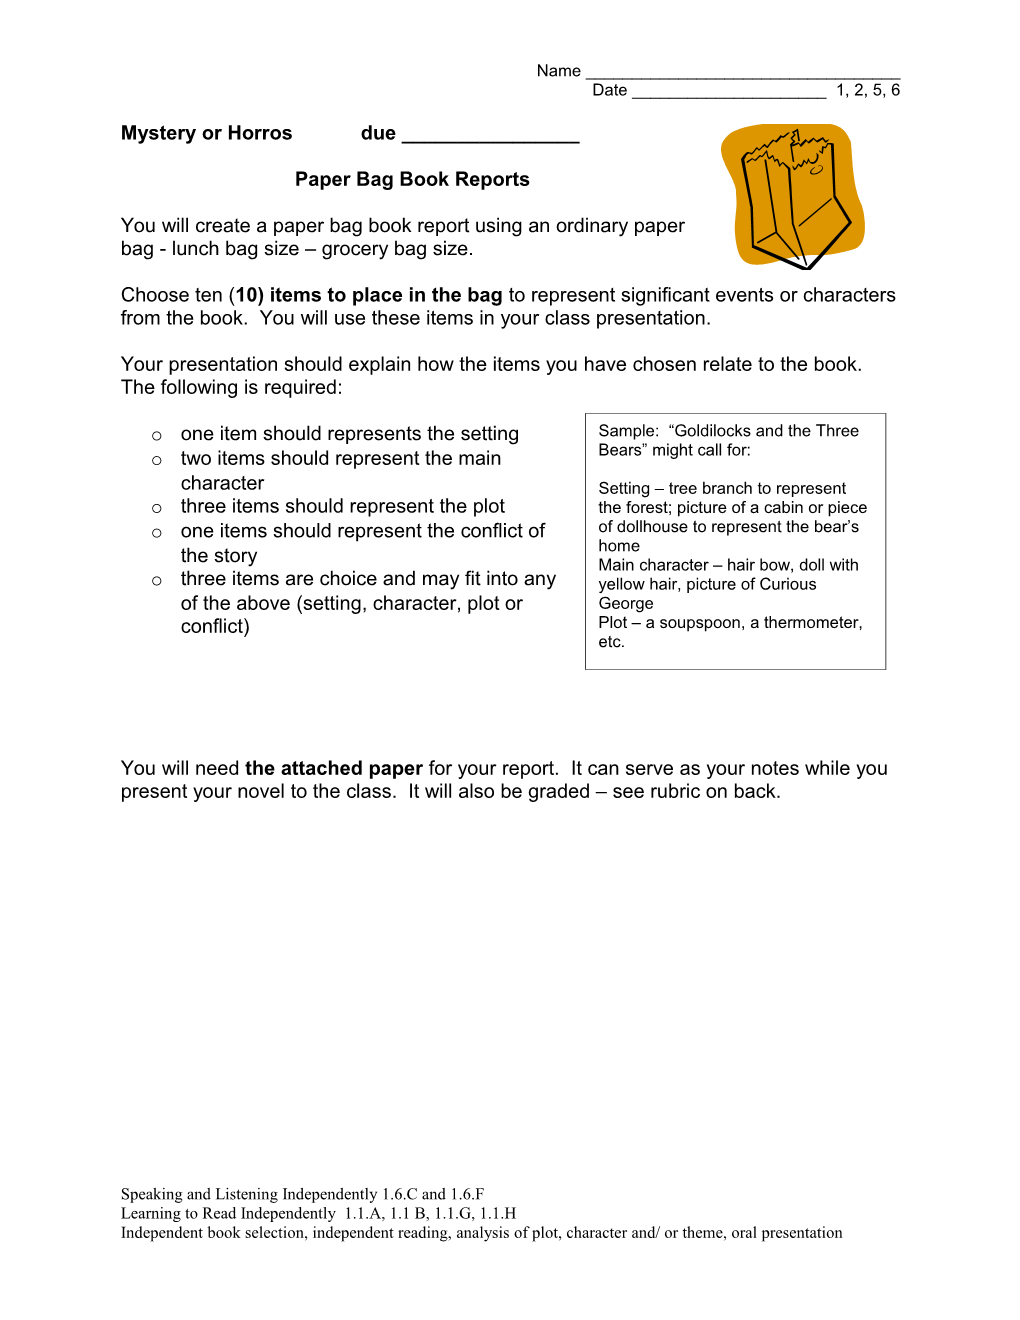 Paper Bag Book Reports